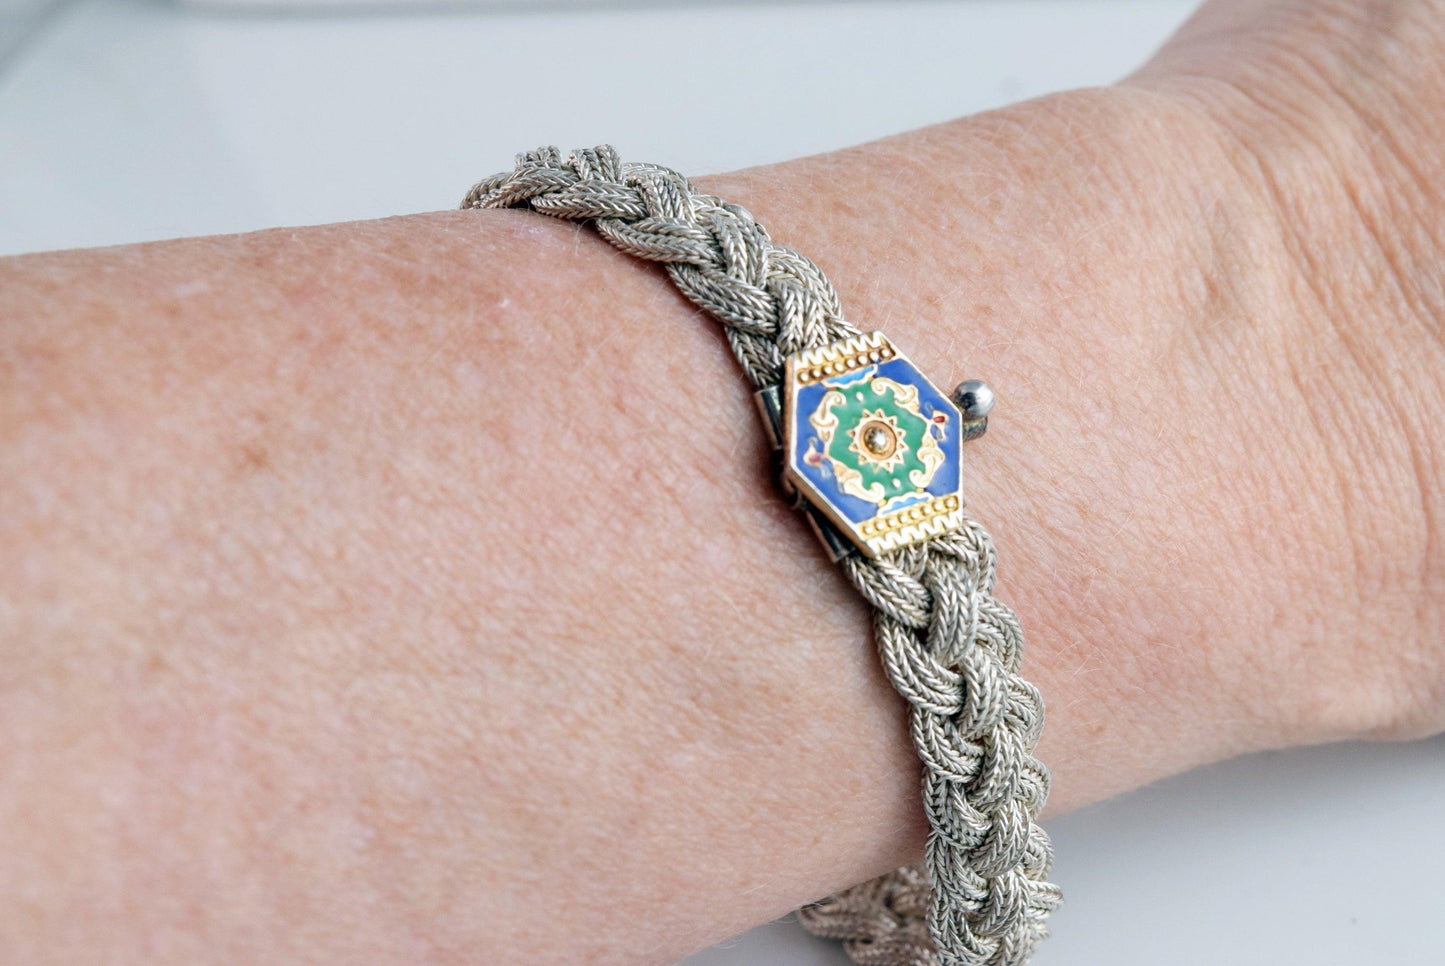 Turkish chain bracelet